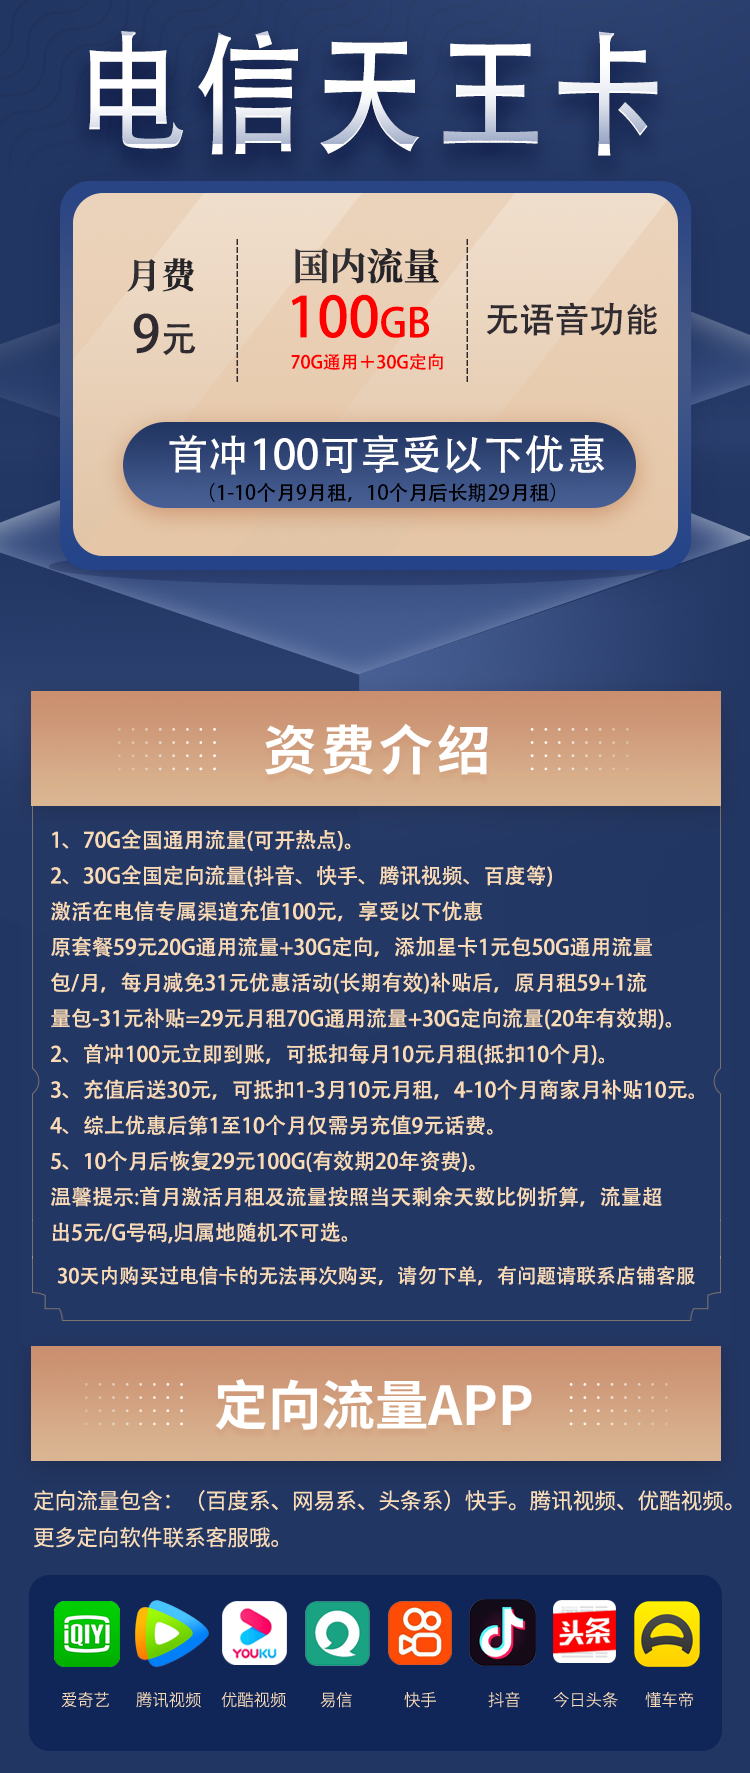 中国电信纯手机流量卡套餐介绍 （9元包100G全国流量,不限速！）插图2